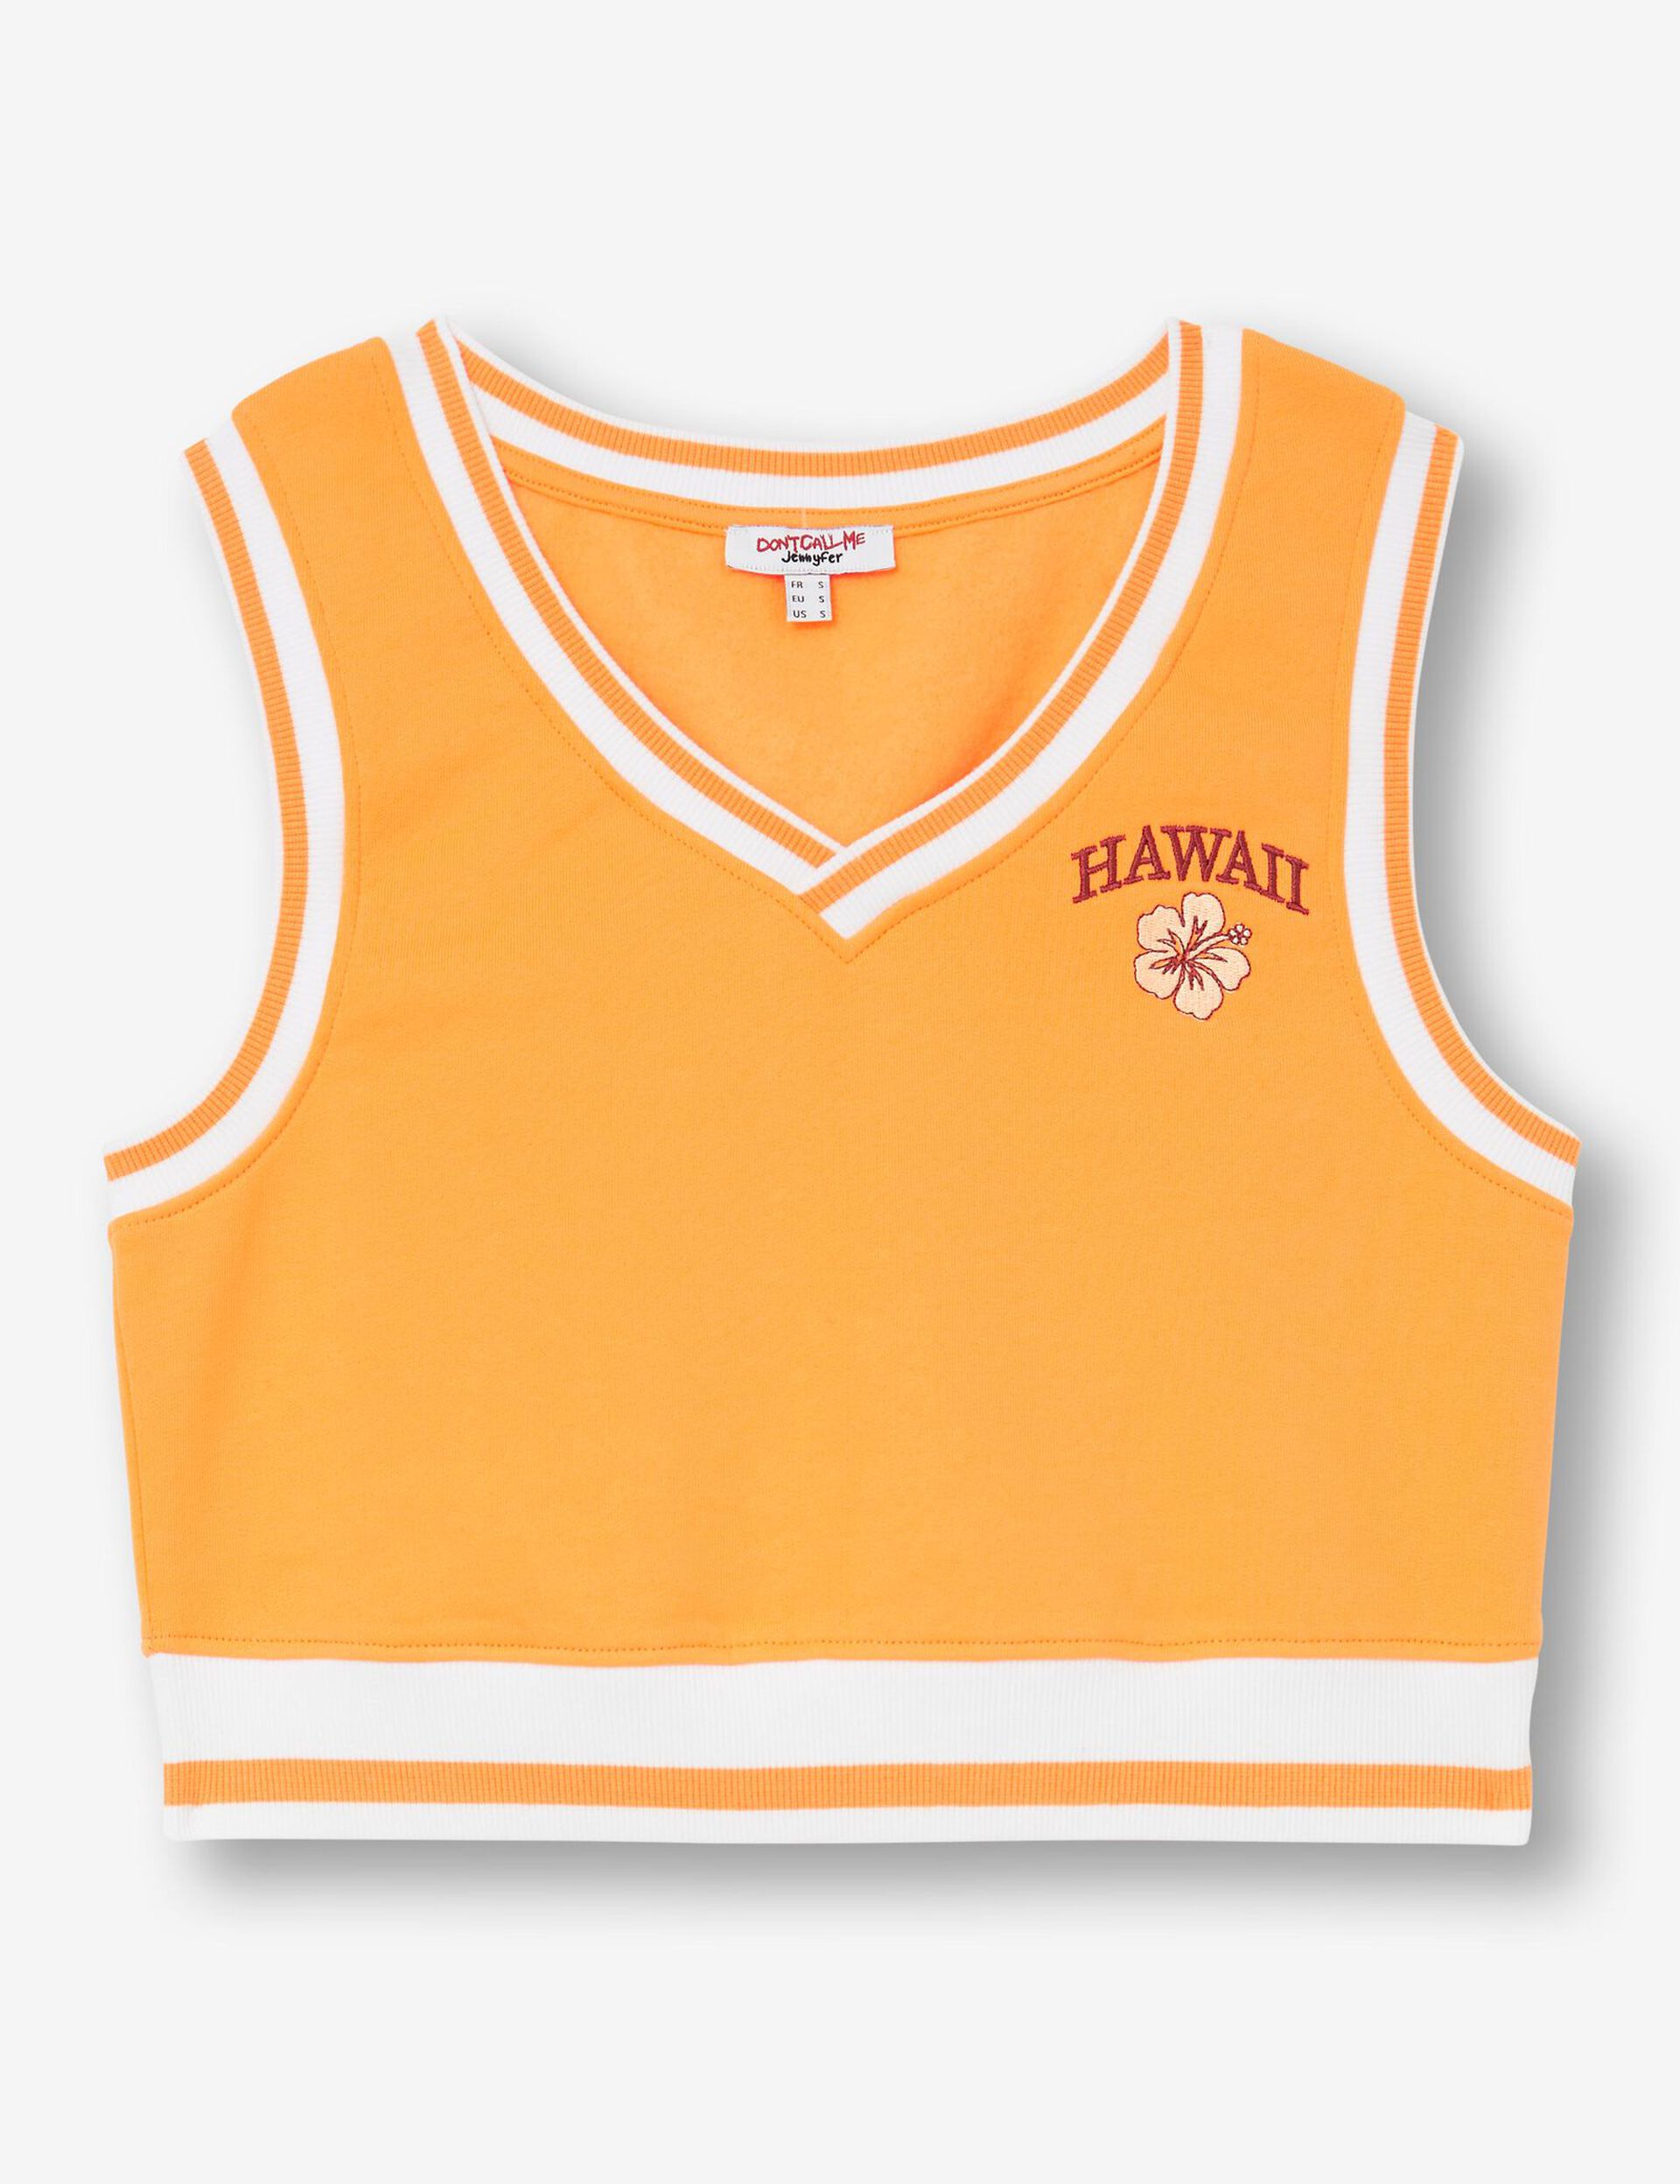 Sleeveless Hawaii sweatshirt